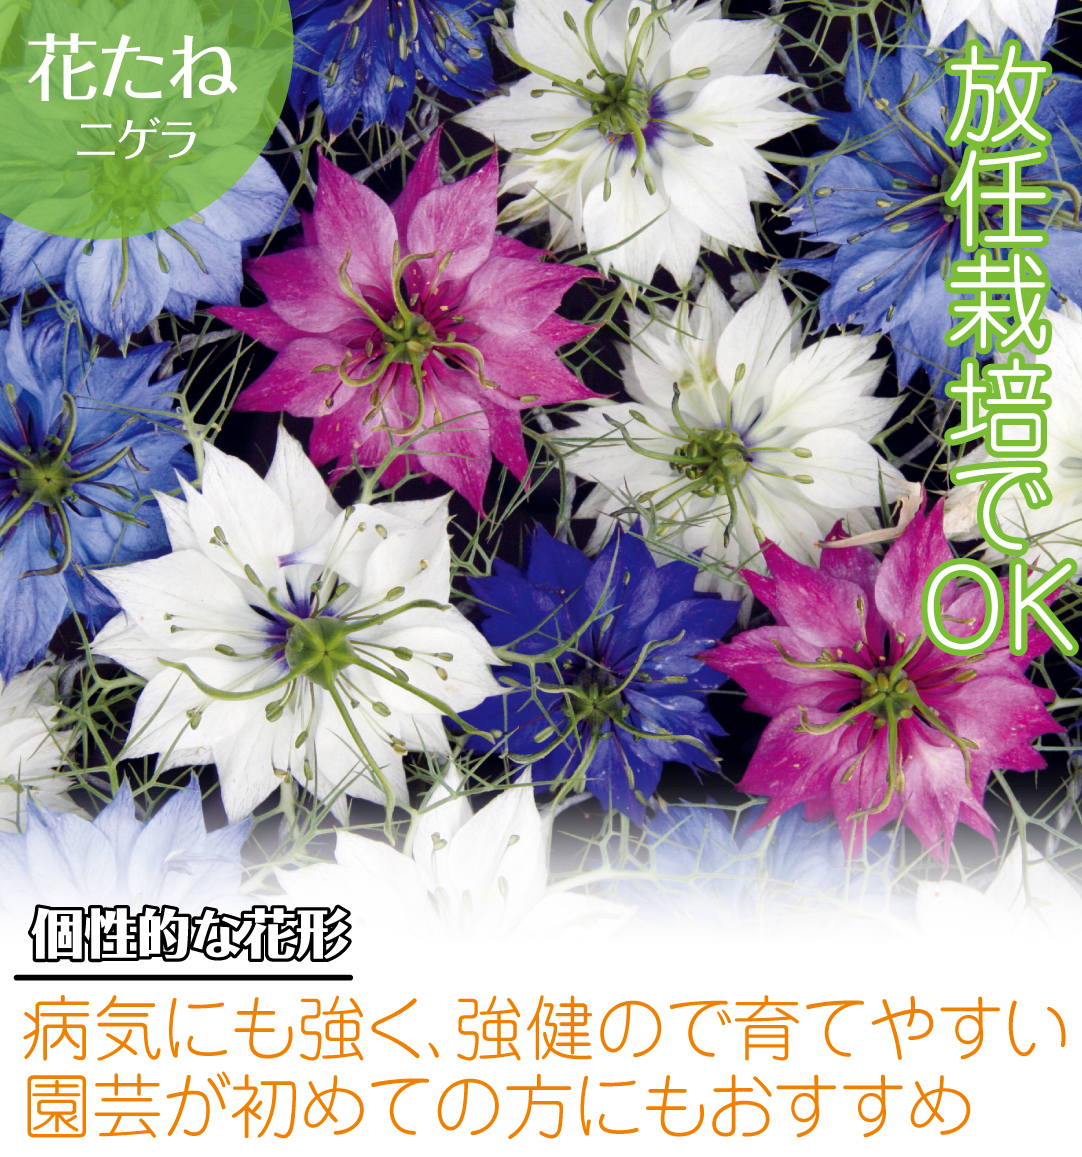 種 花たね ニゲラ混合 1袋(1000mg) :2010-p7-064:花と緑 国華園 通販 